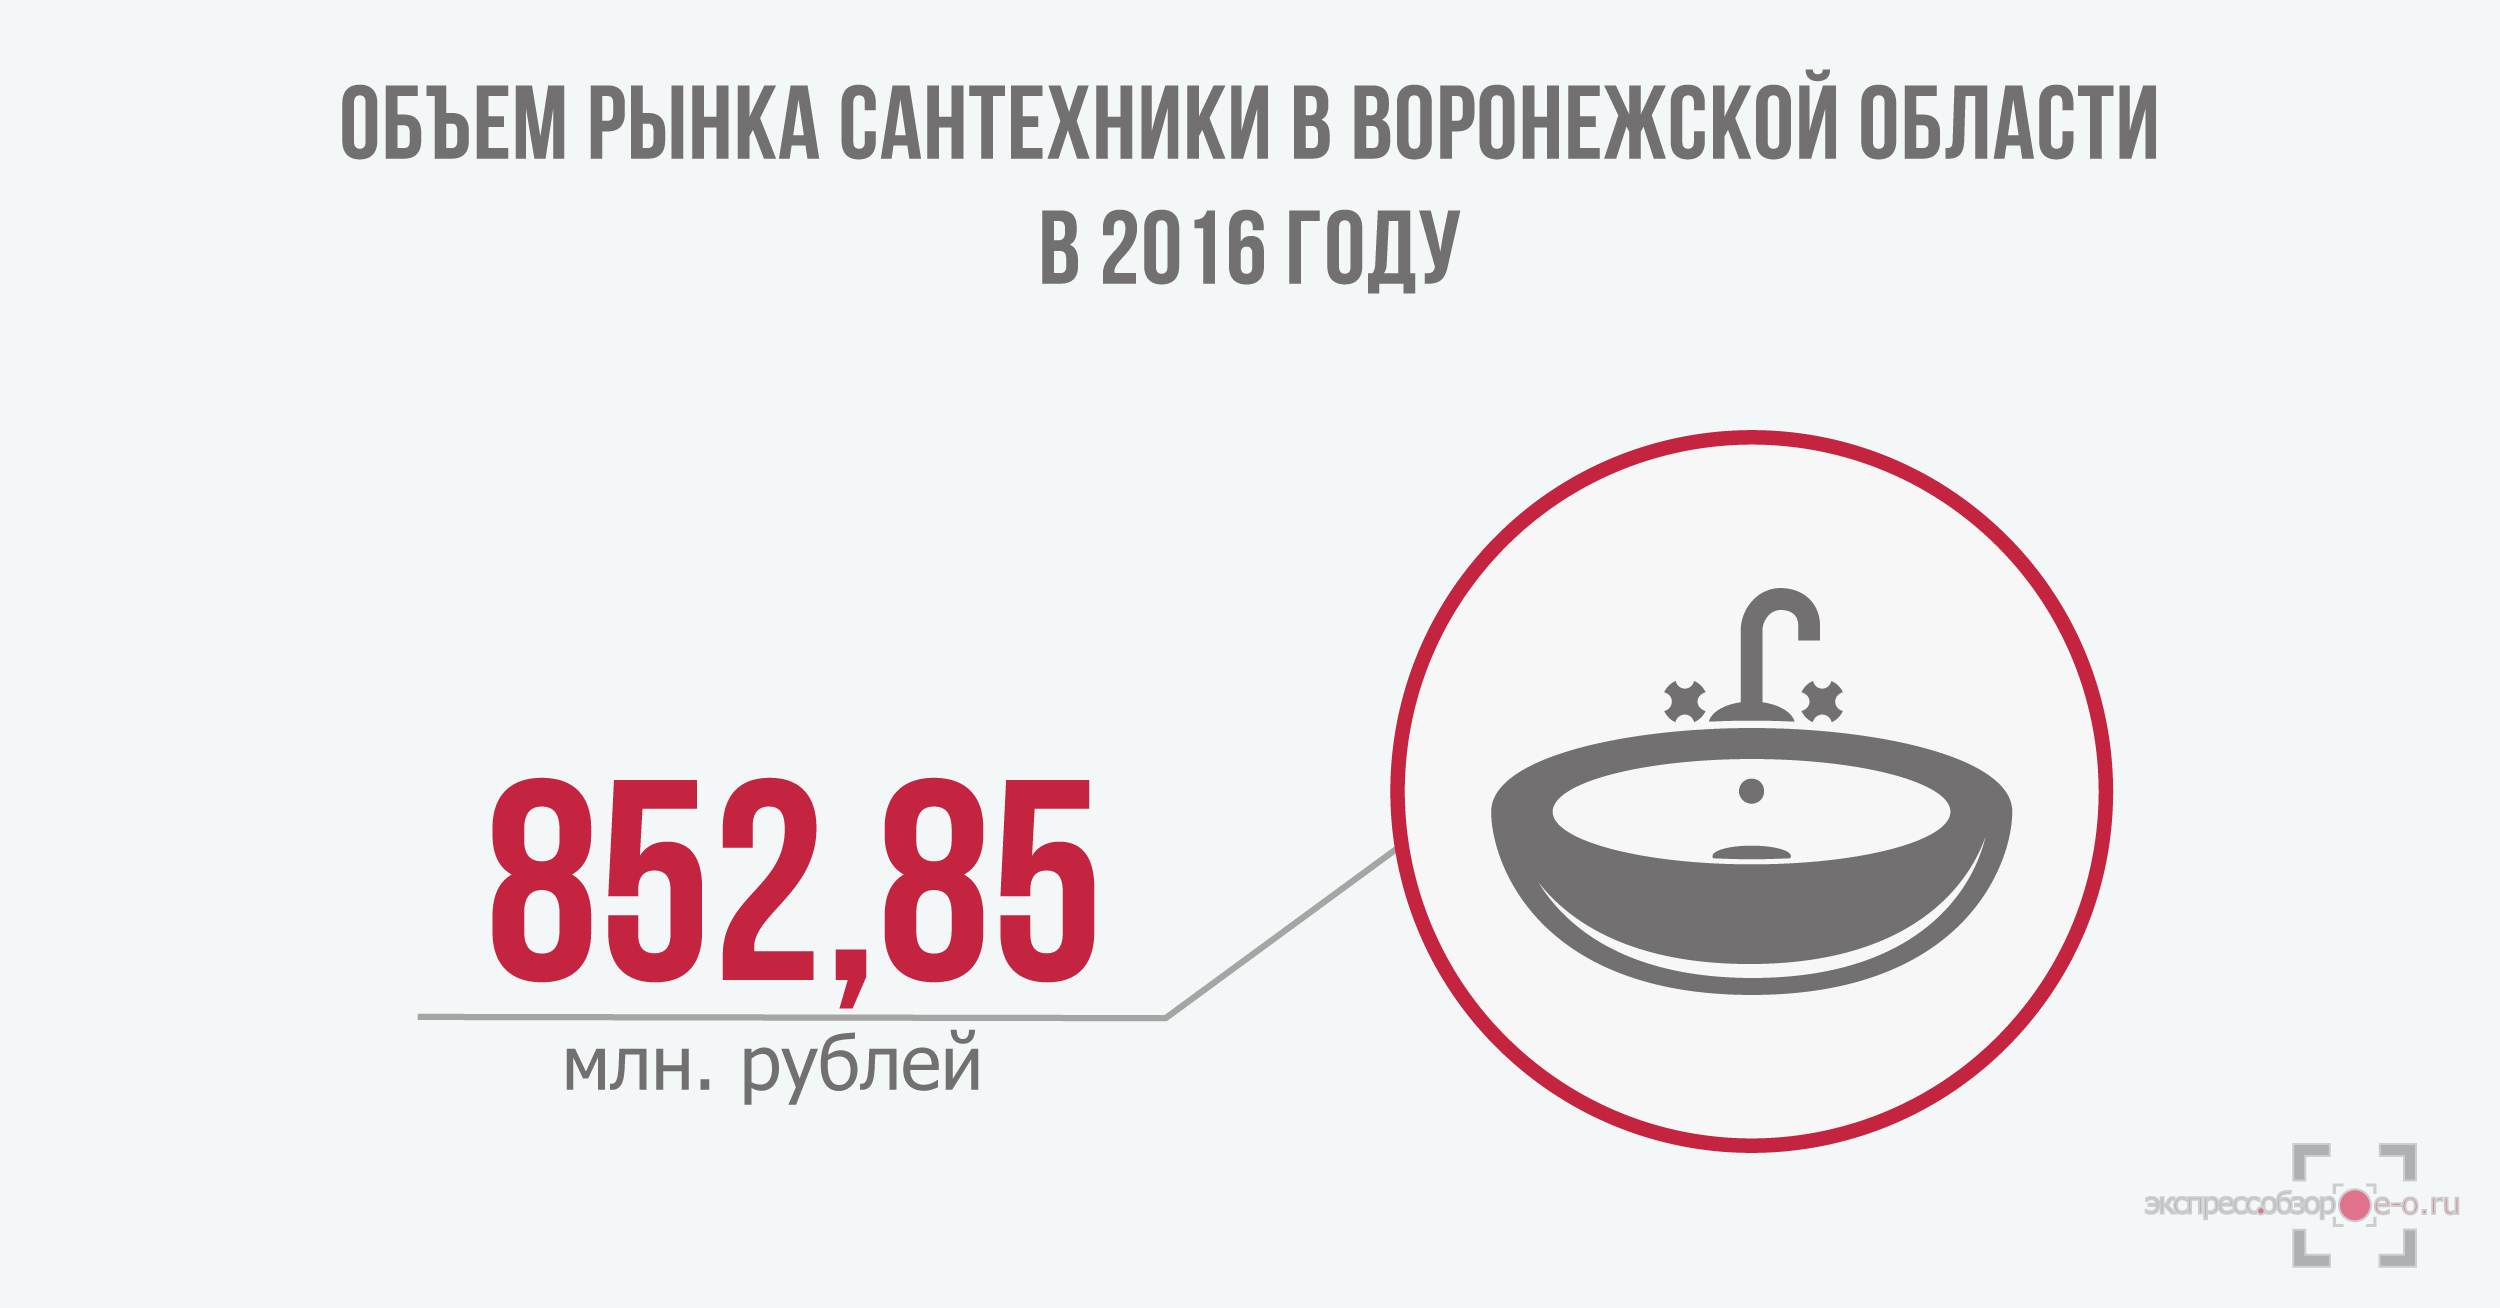 объем рынка сантехники в России в 2016 году